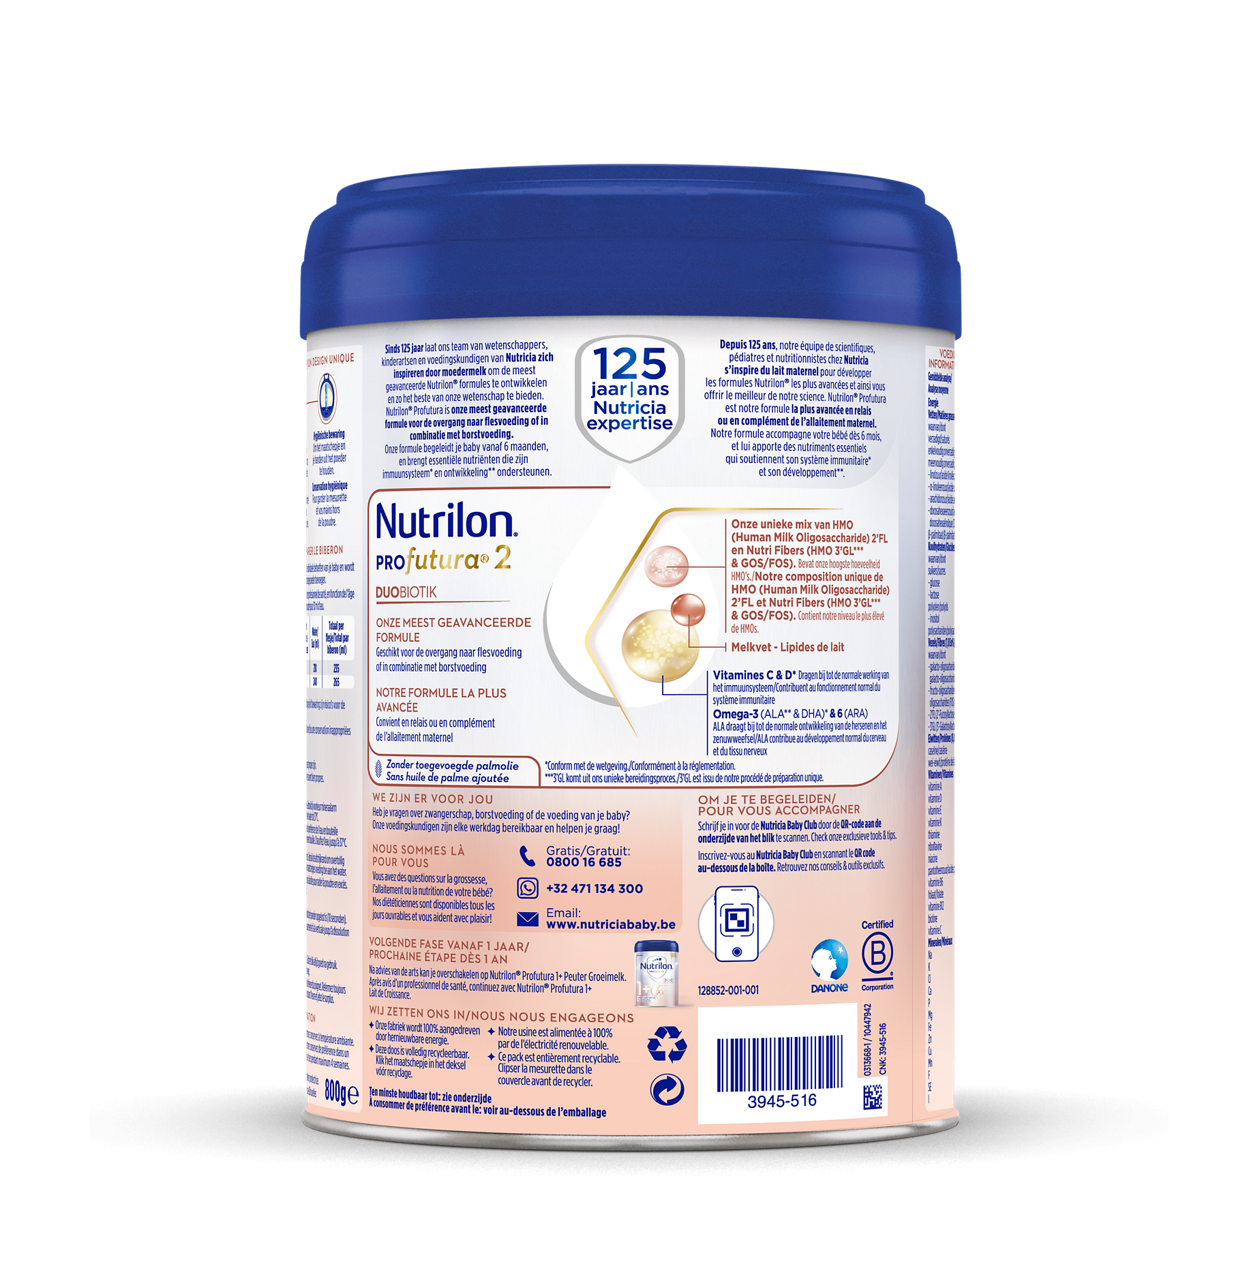 Nutrilon® Profutura 2 est un lait de suite adapté aux besoins nutritionnels des bébés dès l'âge de 6 mois, comme élément d'une alimentation saine et diversifiée.